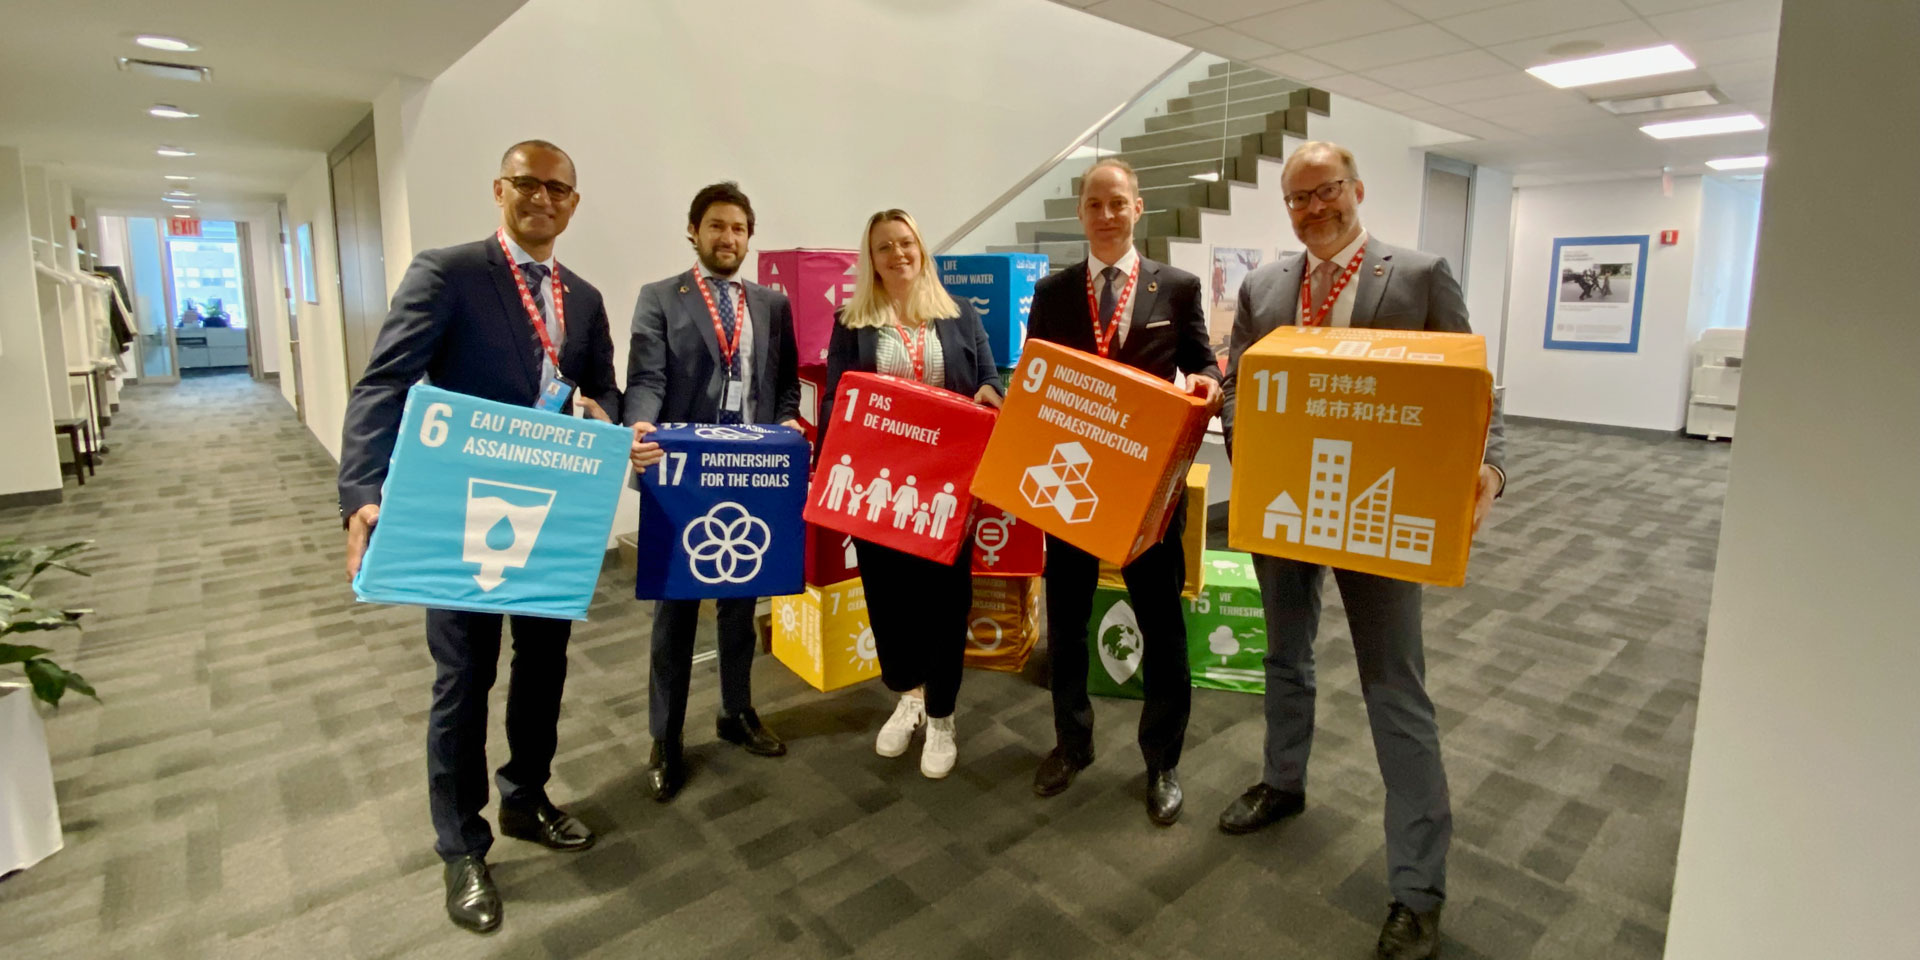 La delegazione svizzera al Forum politico di alto livello 2023 porta dei cubi colorati, ognuno dei quali rappresenta un obiettivo di sviluppo sostenibile.